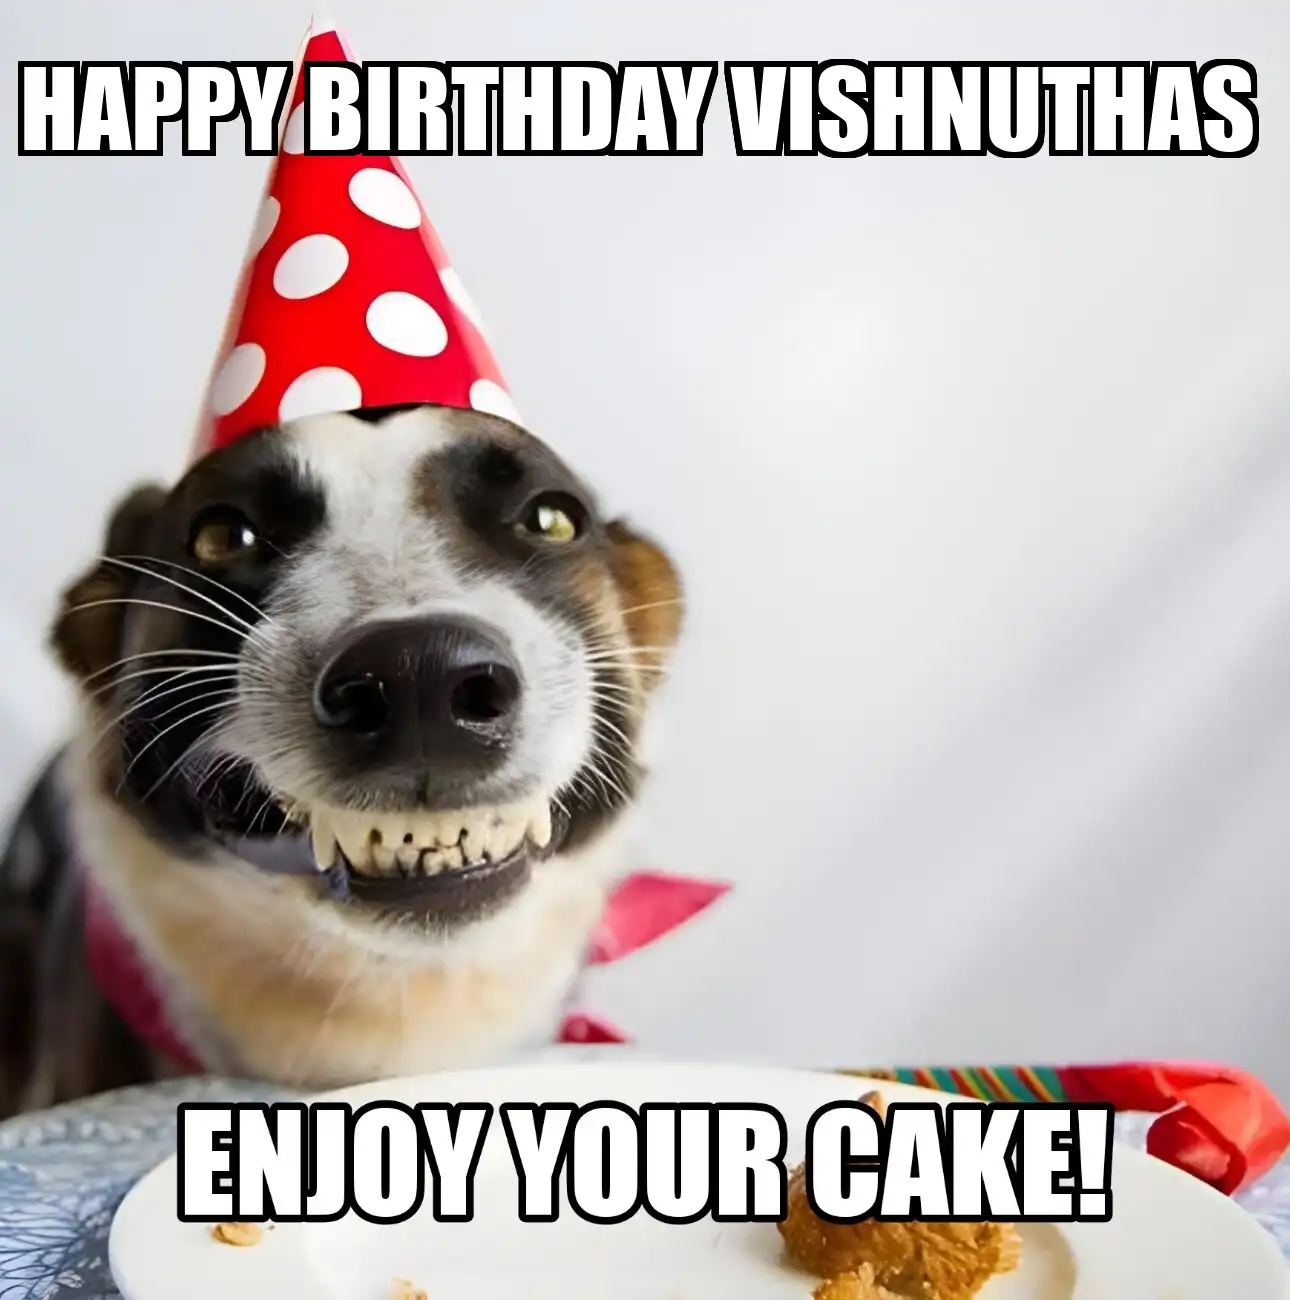 Happy Birthday Vishnuthas Enjoy Your Cake Dog Meme